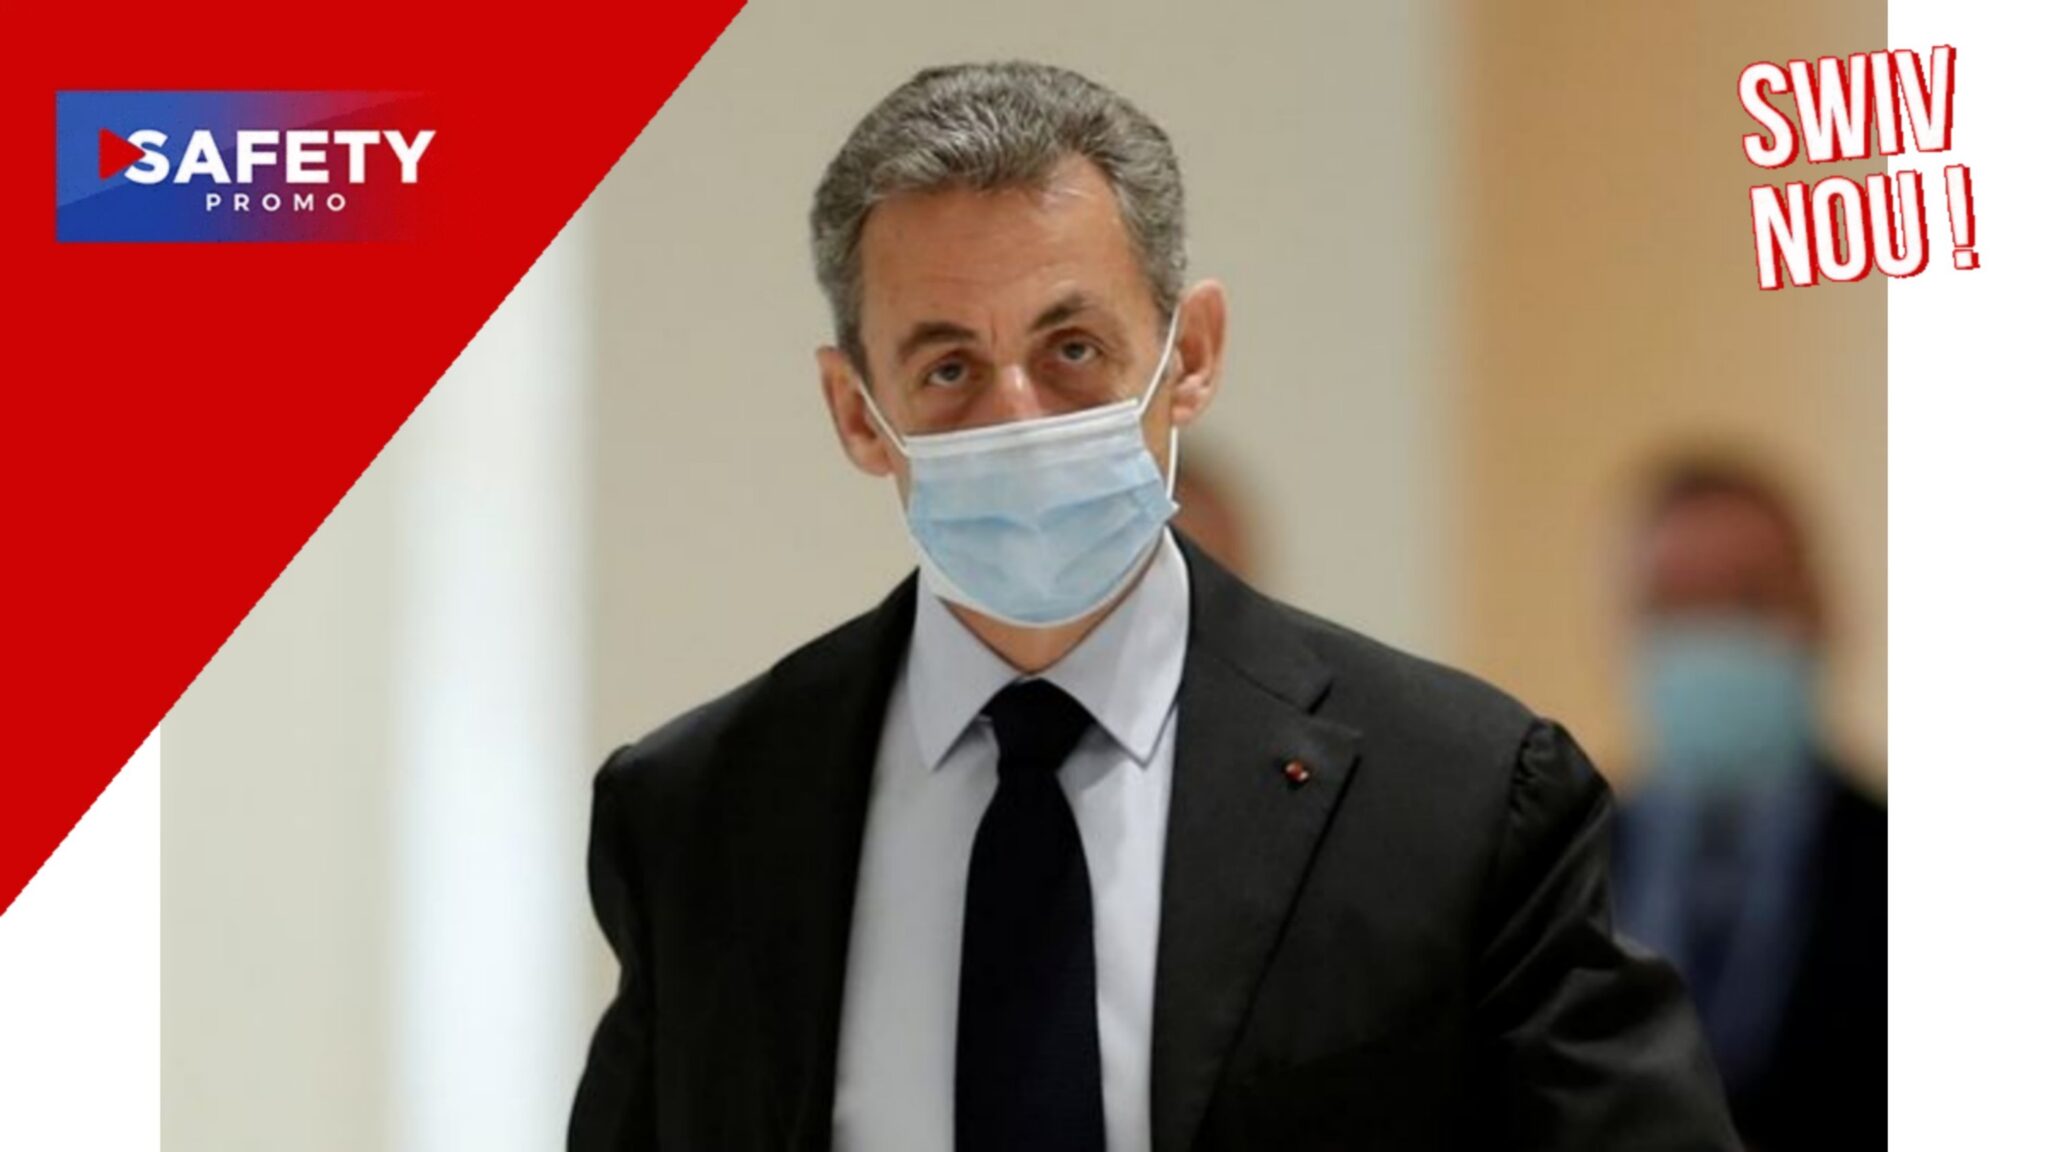 Affaire Bygmalion: Nicolas Sarkozy condamné à un an de prison ferme